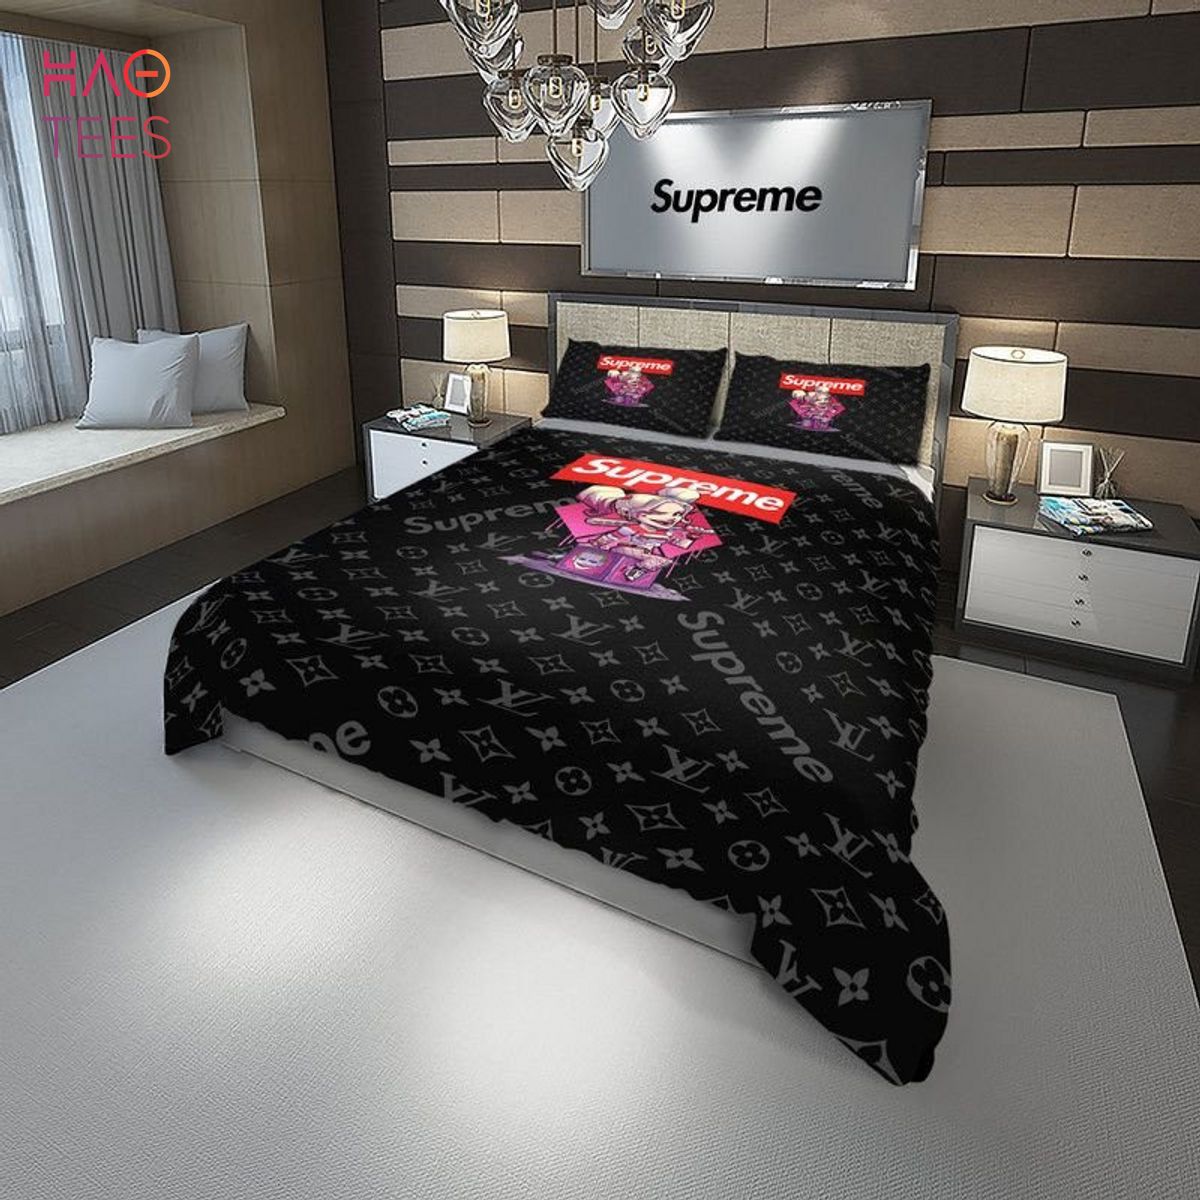 LV Supreme Mix Black Luxury Color Bedding Sets